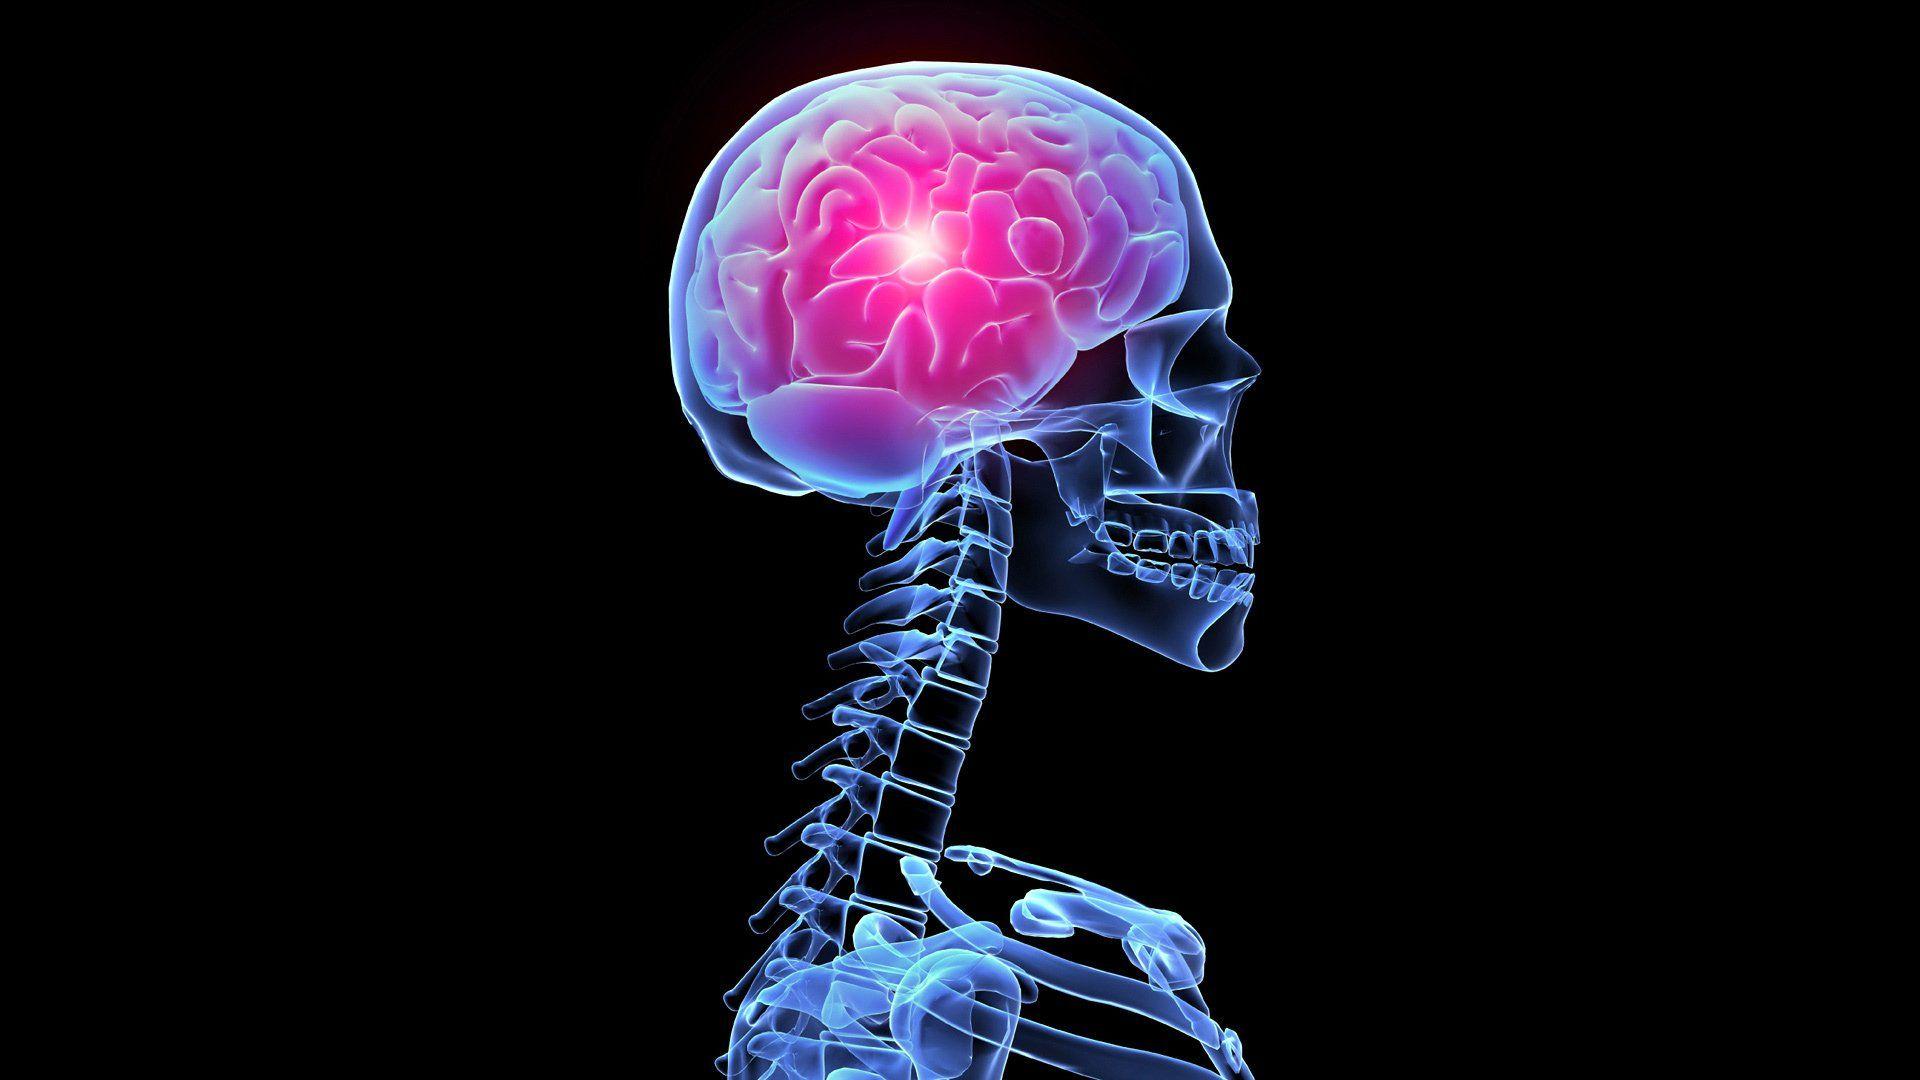 Wallpaper Of Brain Parts 3D Brain Anatomy Medical Head Skull Digital